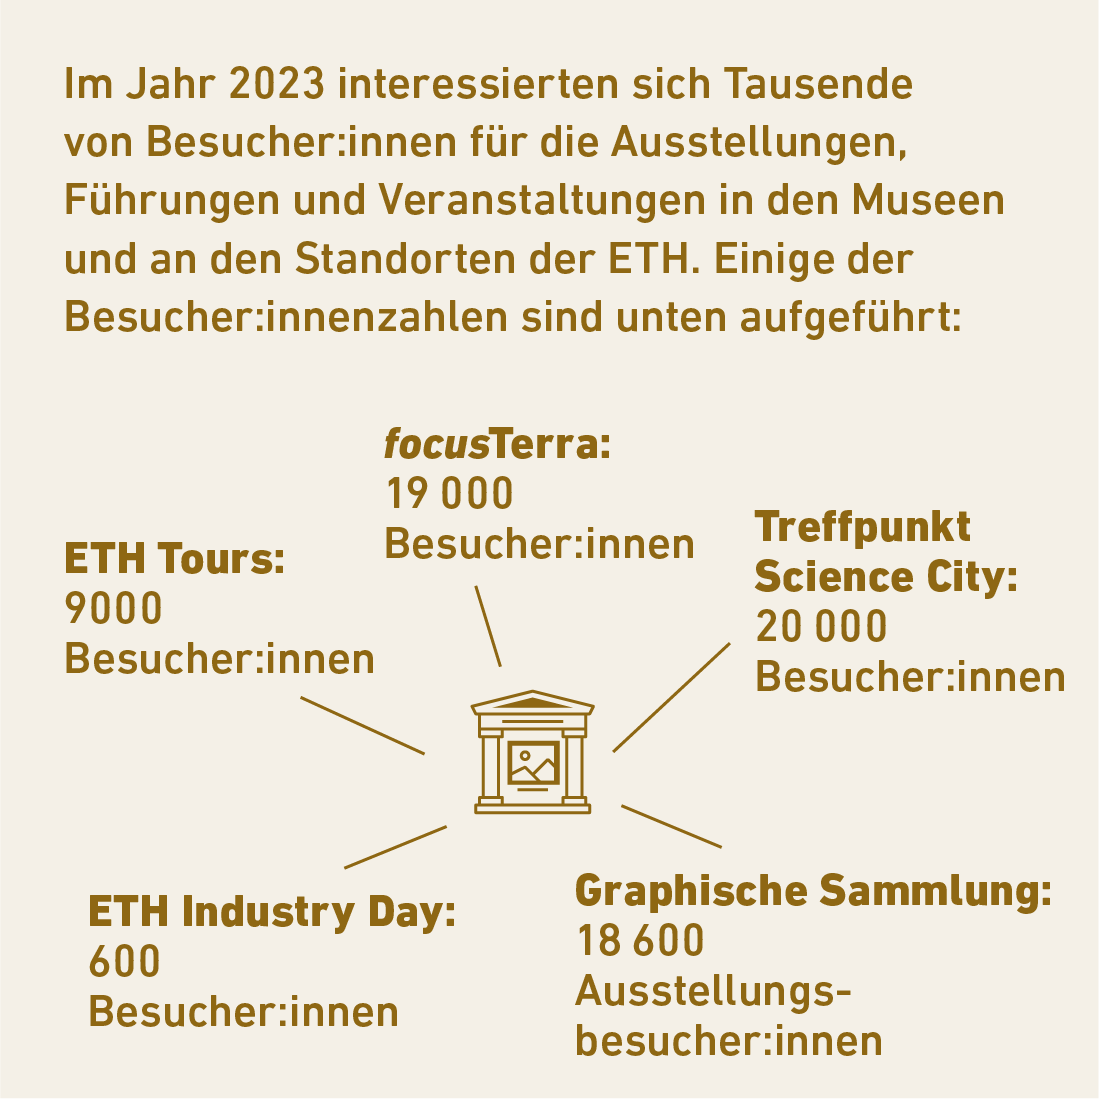 Im Jahr 2023 interessierten sich Tausende von Besucher:innen für die Ausstellungen, Führungen und Veranstaltungen in den Museen und an den Standorten der ETH. Link zum Wertschöpfungsmodell.